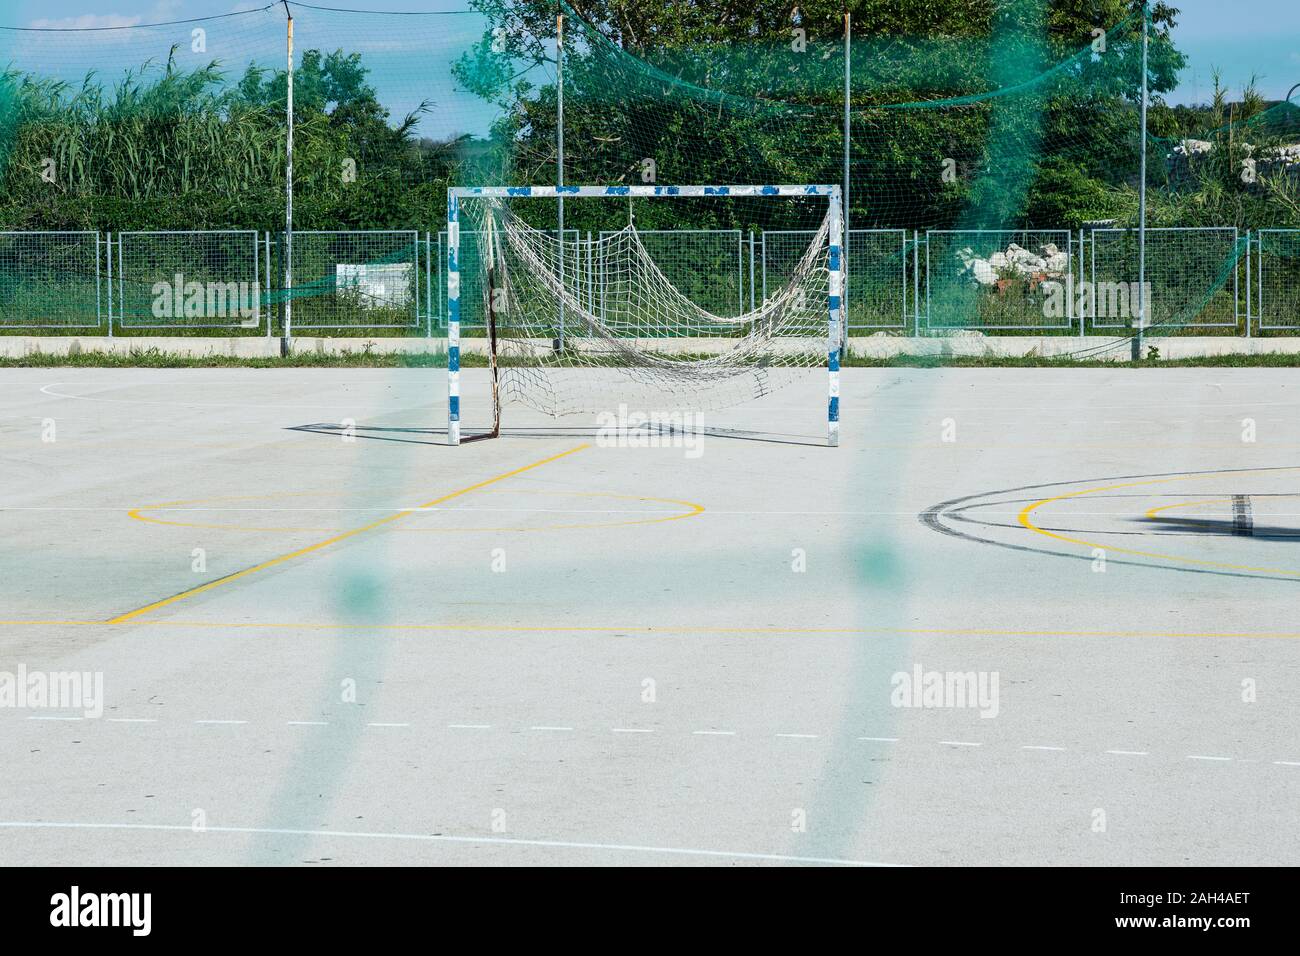 La Croatie, Nin, buts de soccer dans la cour de l'école vide permanent Banque D'Images